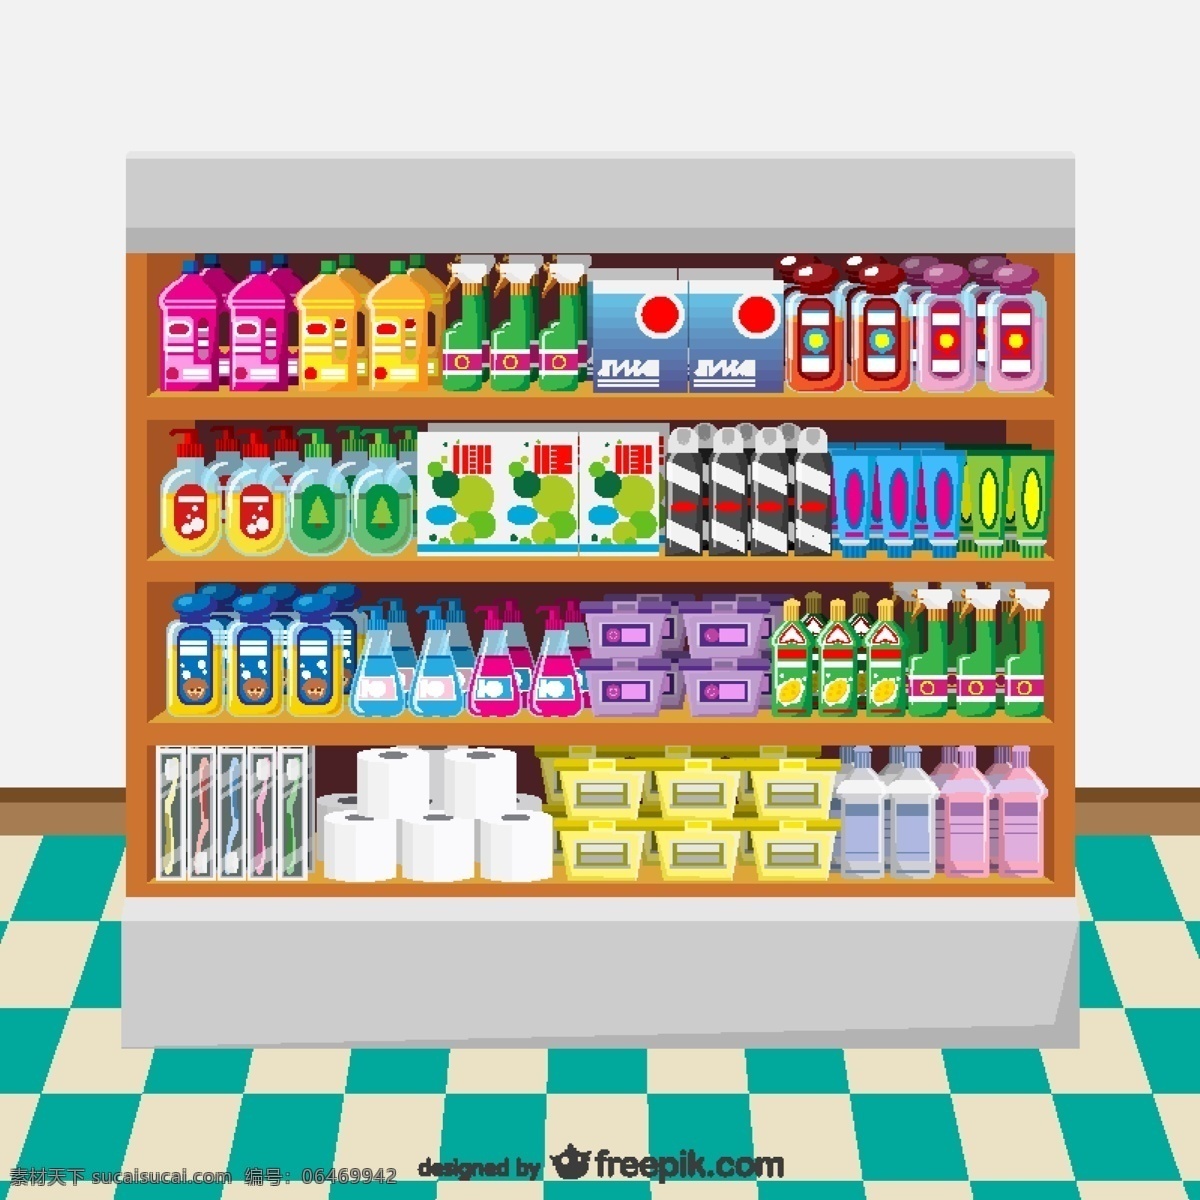 洗涤剂 超市货架 纸 模板 购物 瓶子 商店 清洁 厕所 超市 浴室 插图 洗涤 图像 产品 销售 货架 白色